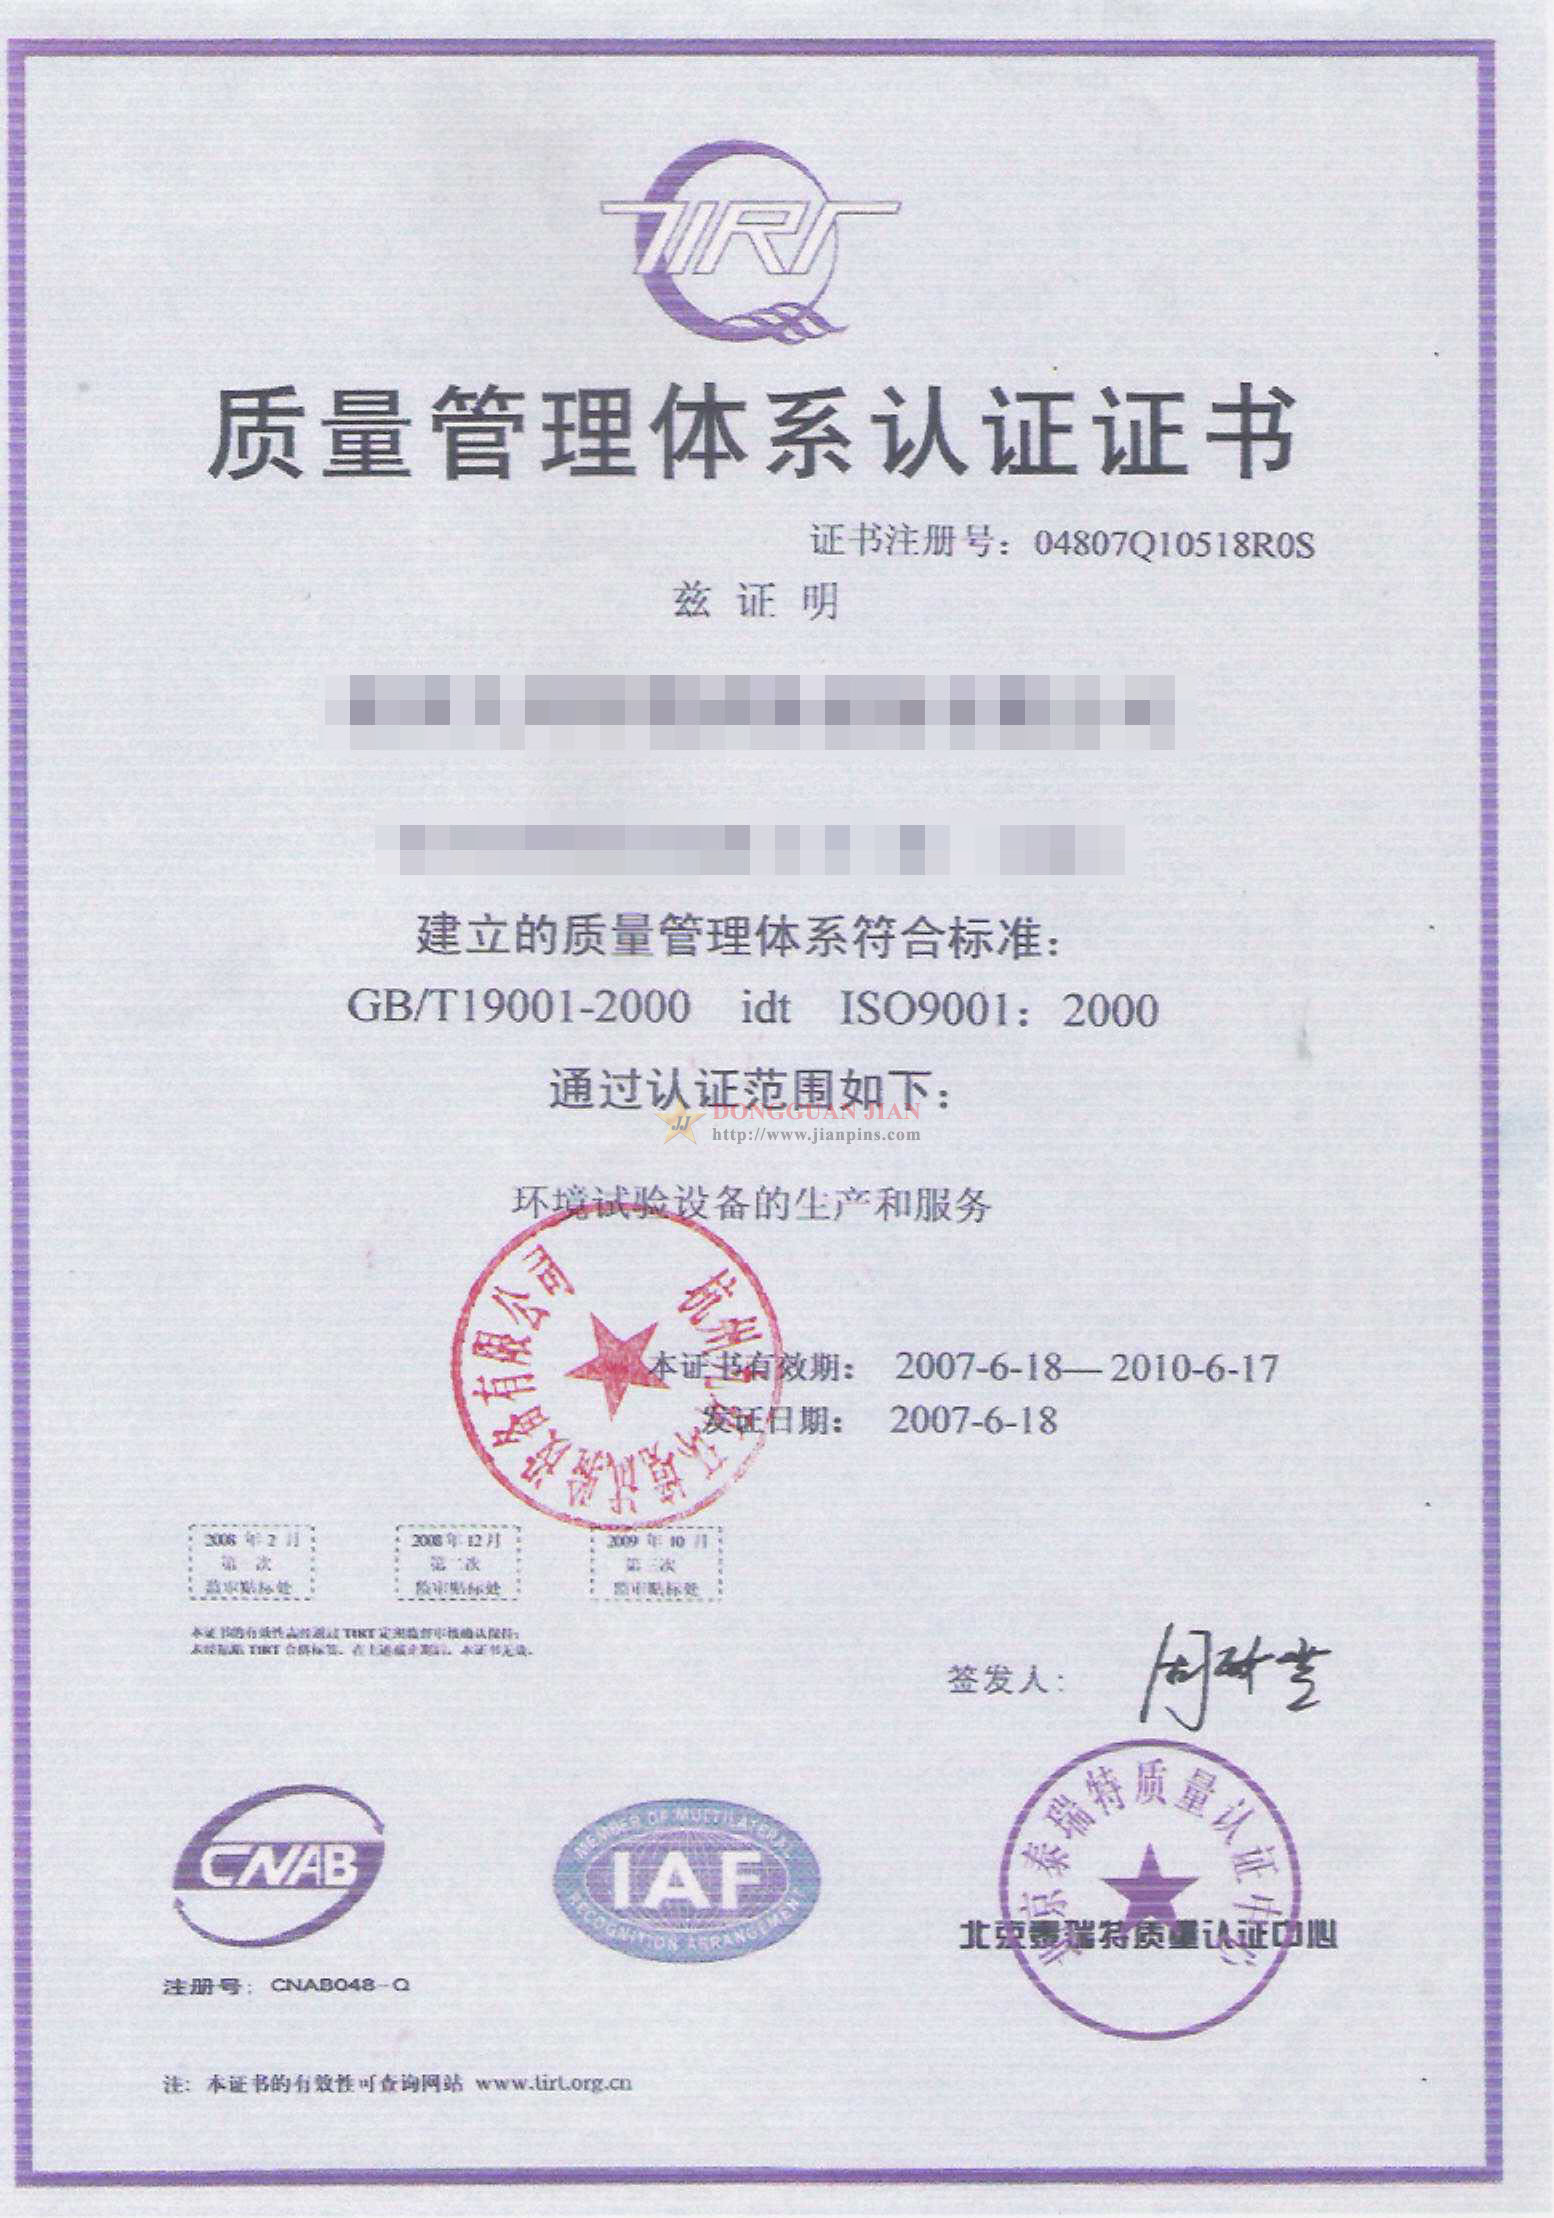 Certificaten4